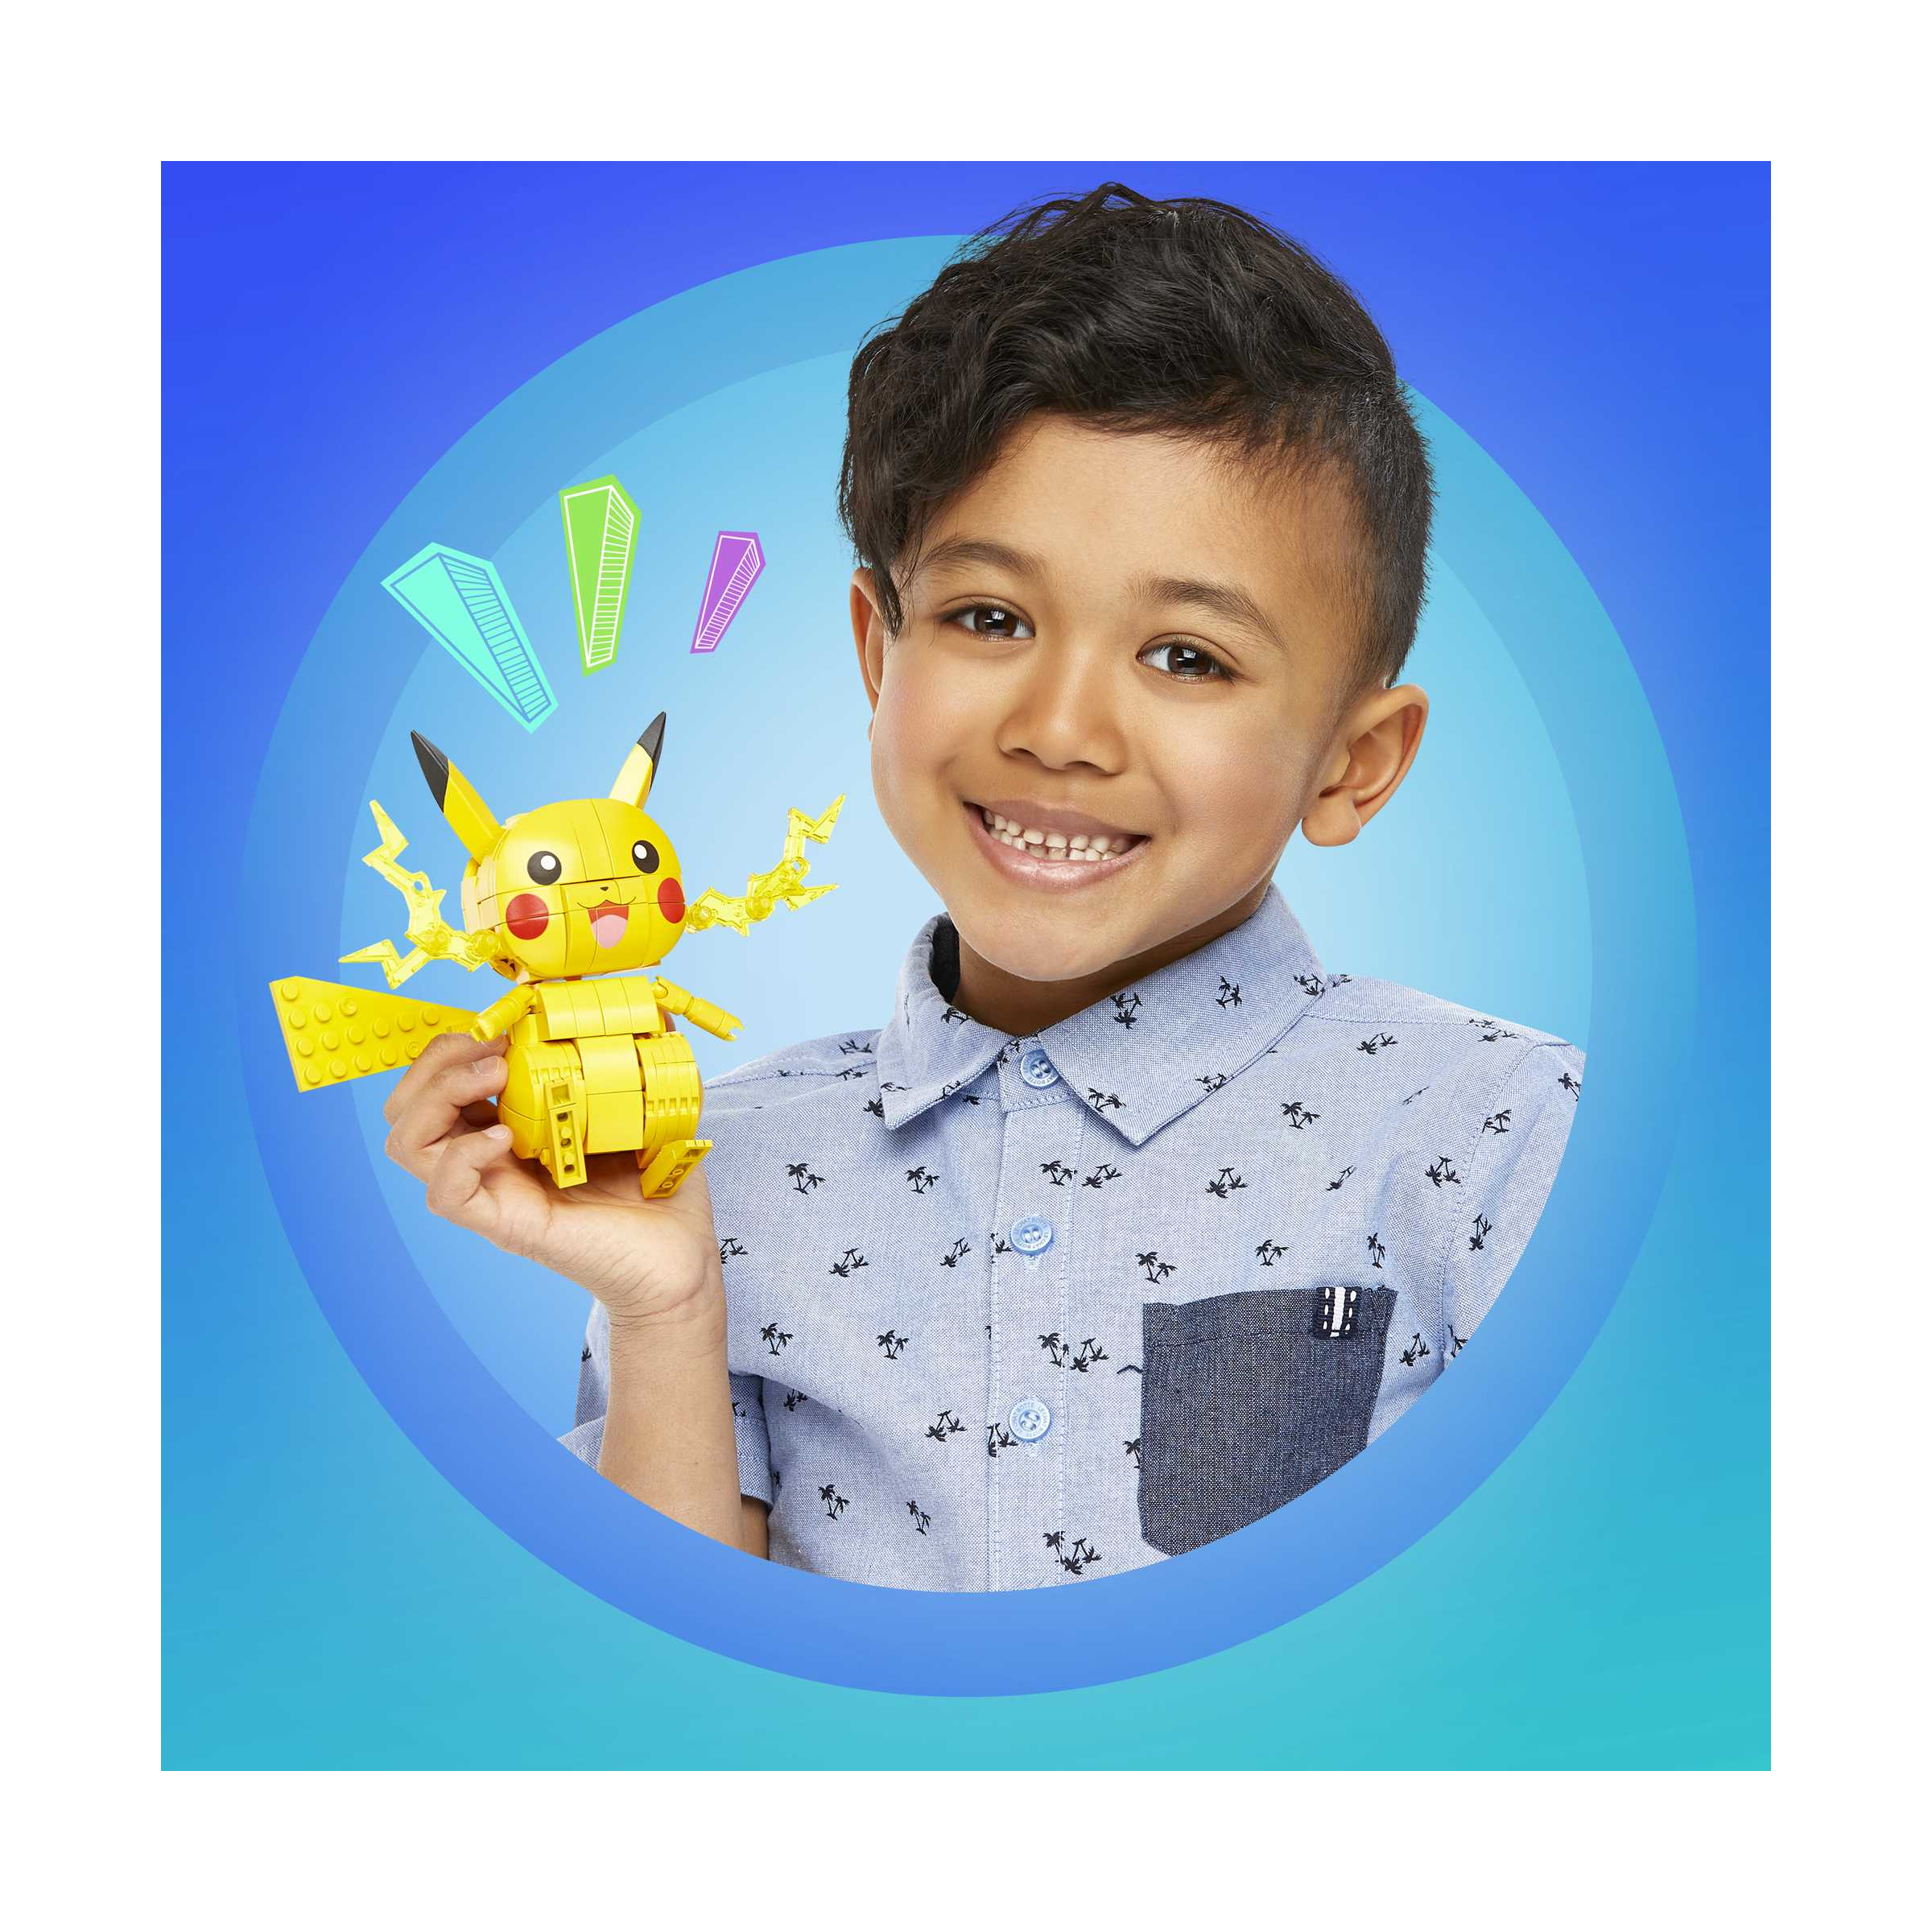 Mega construx - mega construx pokémon elettro da 10 cm con dettagli realistici , giocattolo per bambini 6+ anni, gmd31 - MEGA BLOKS, POKEMON